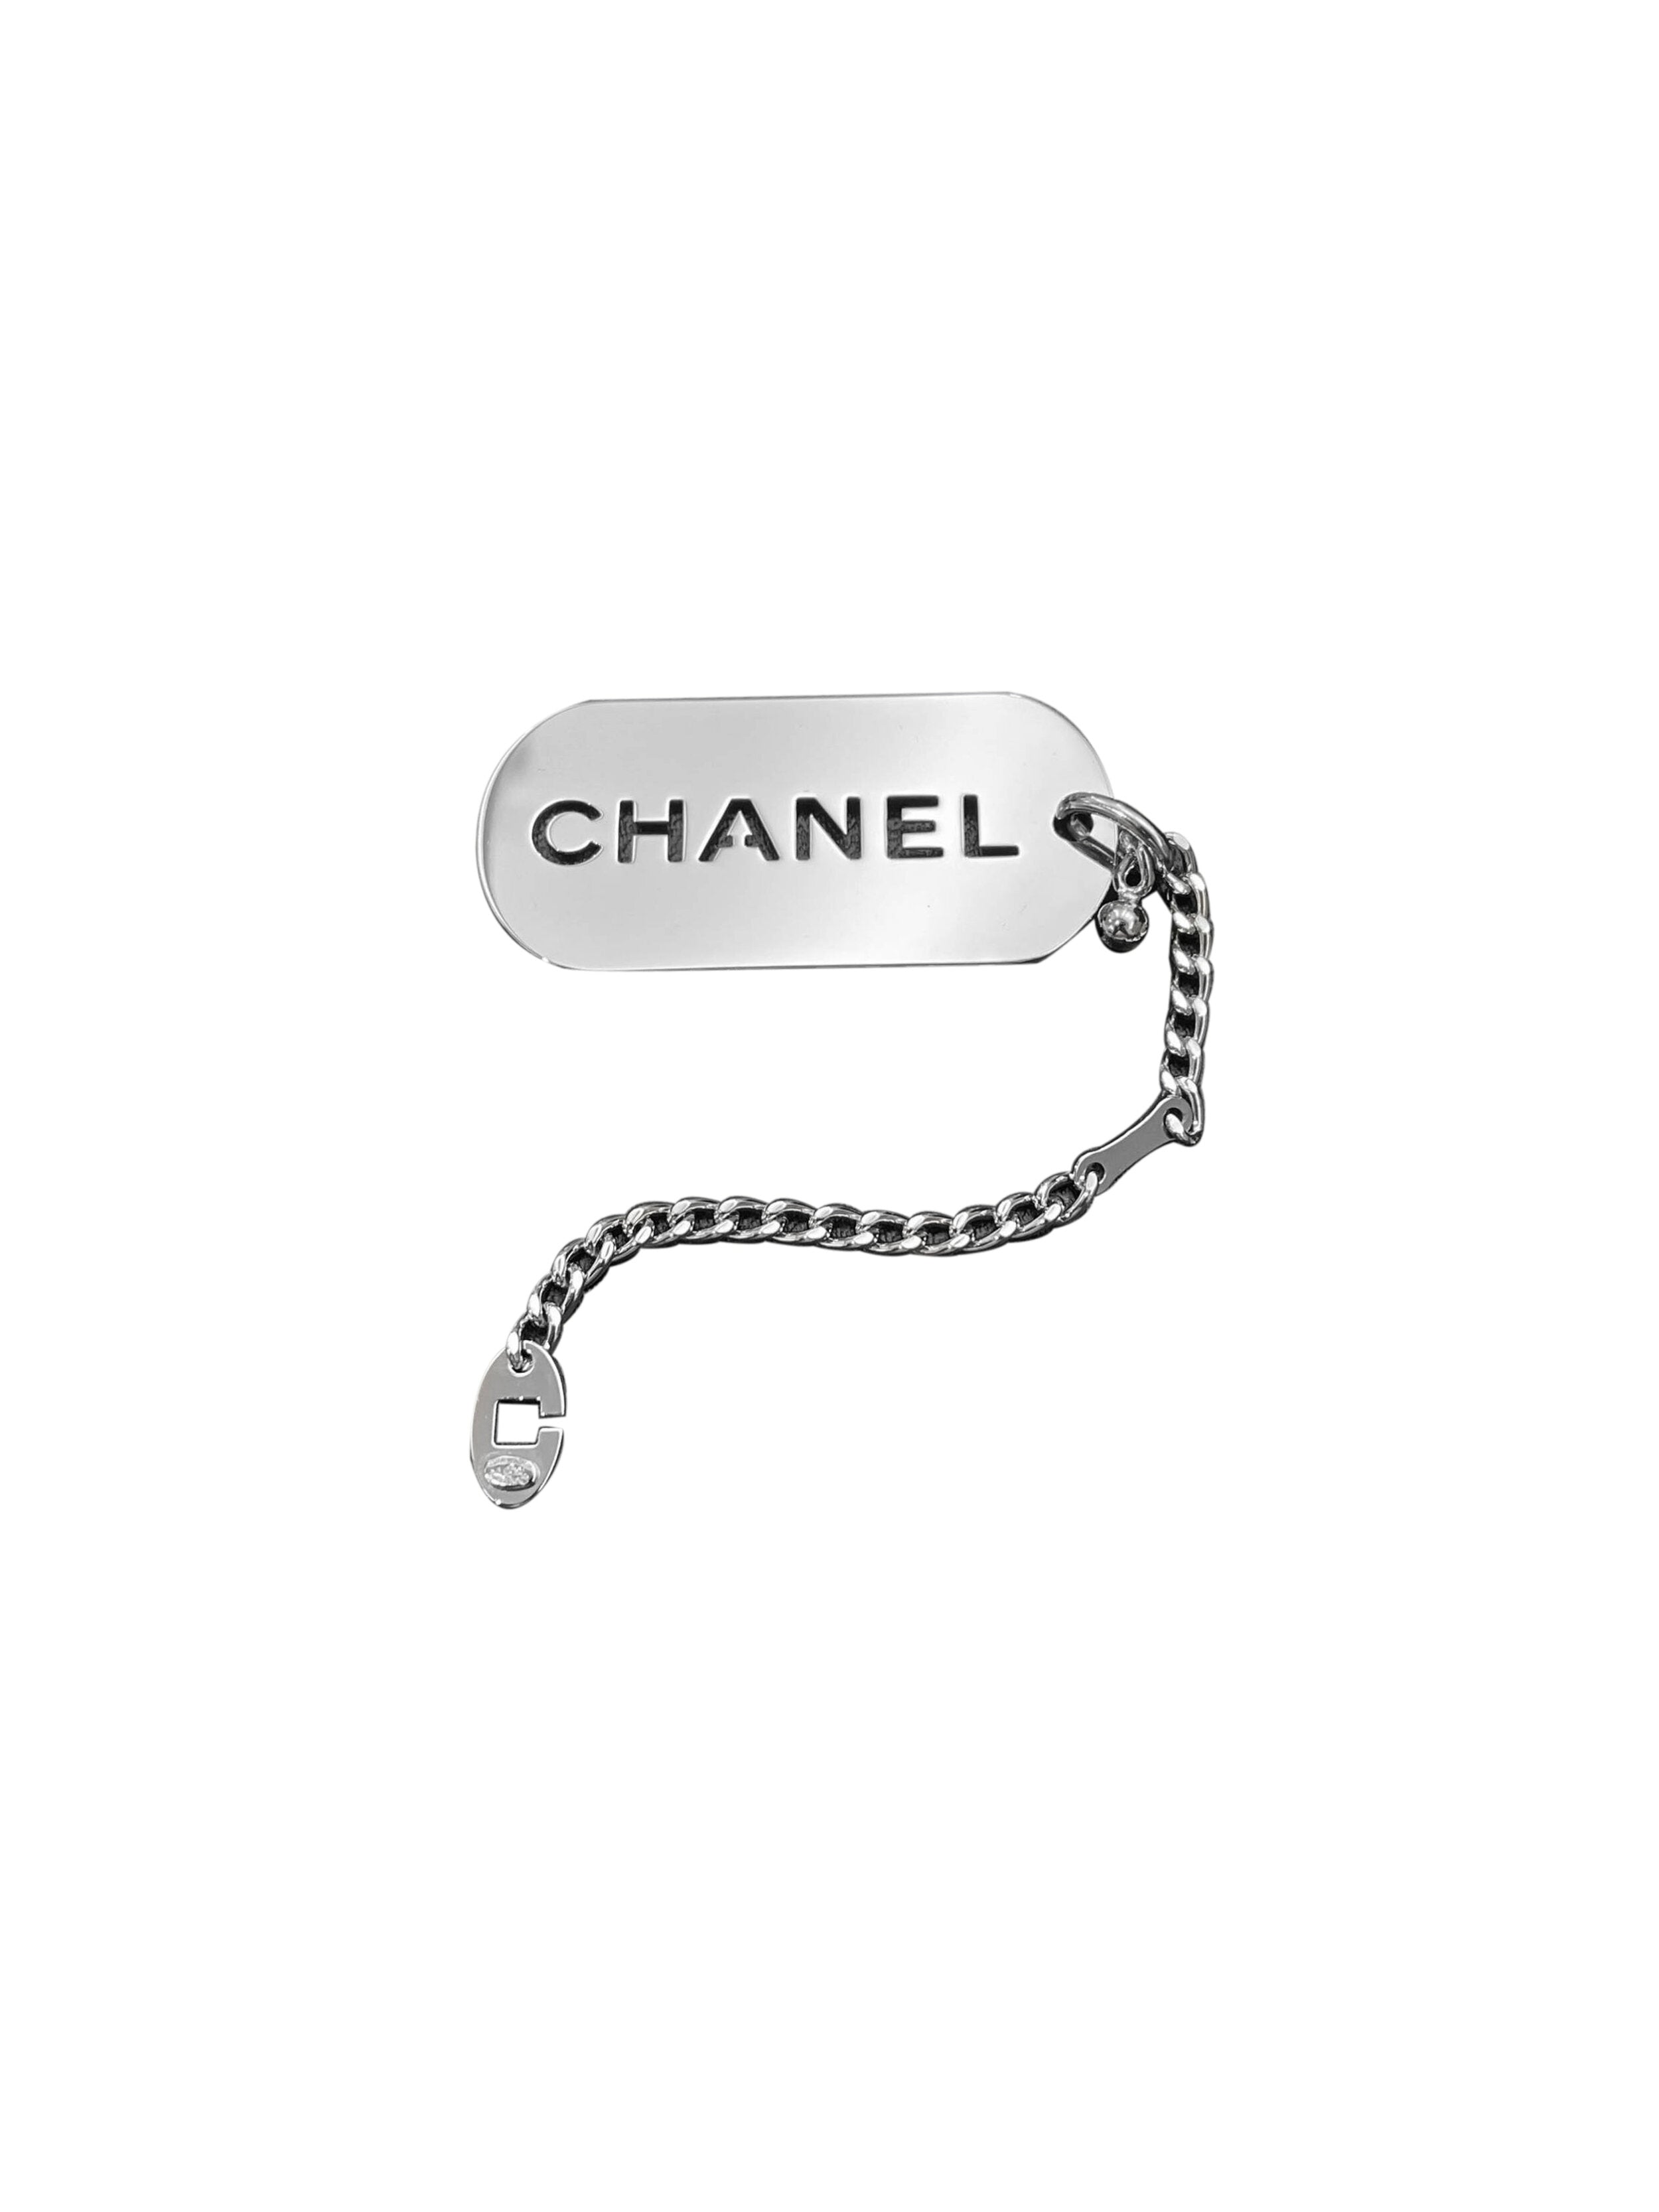 Chanel Dog Tag Bag Charm/Keychain